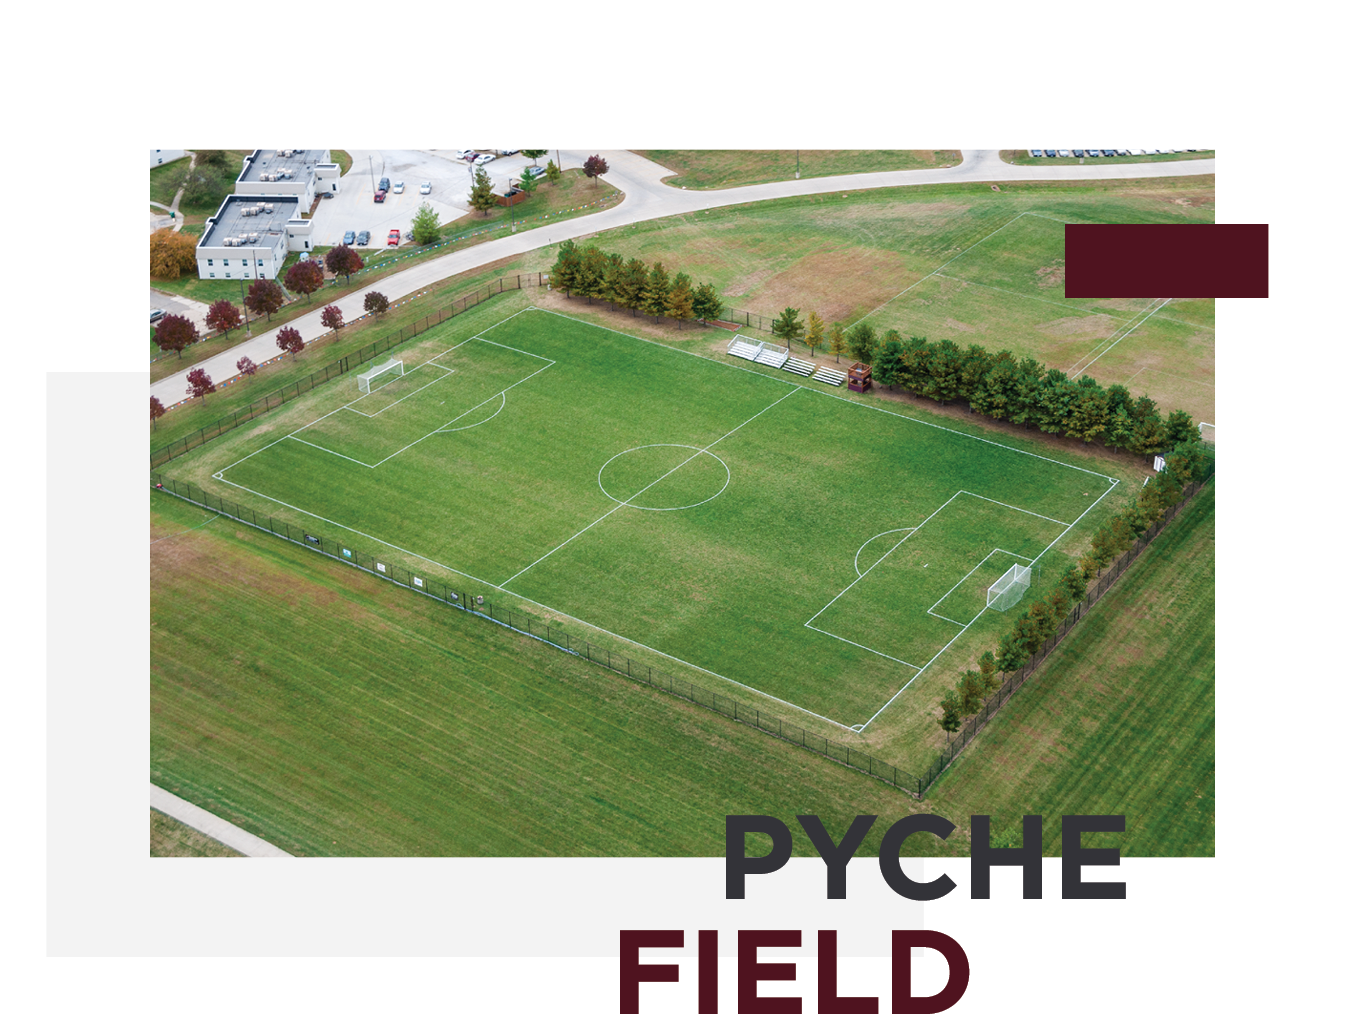 Pyche Field